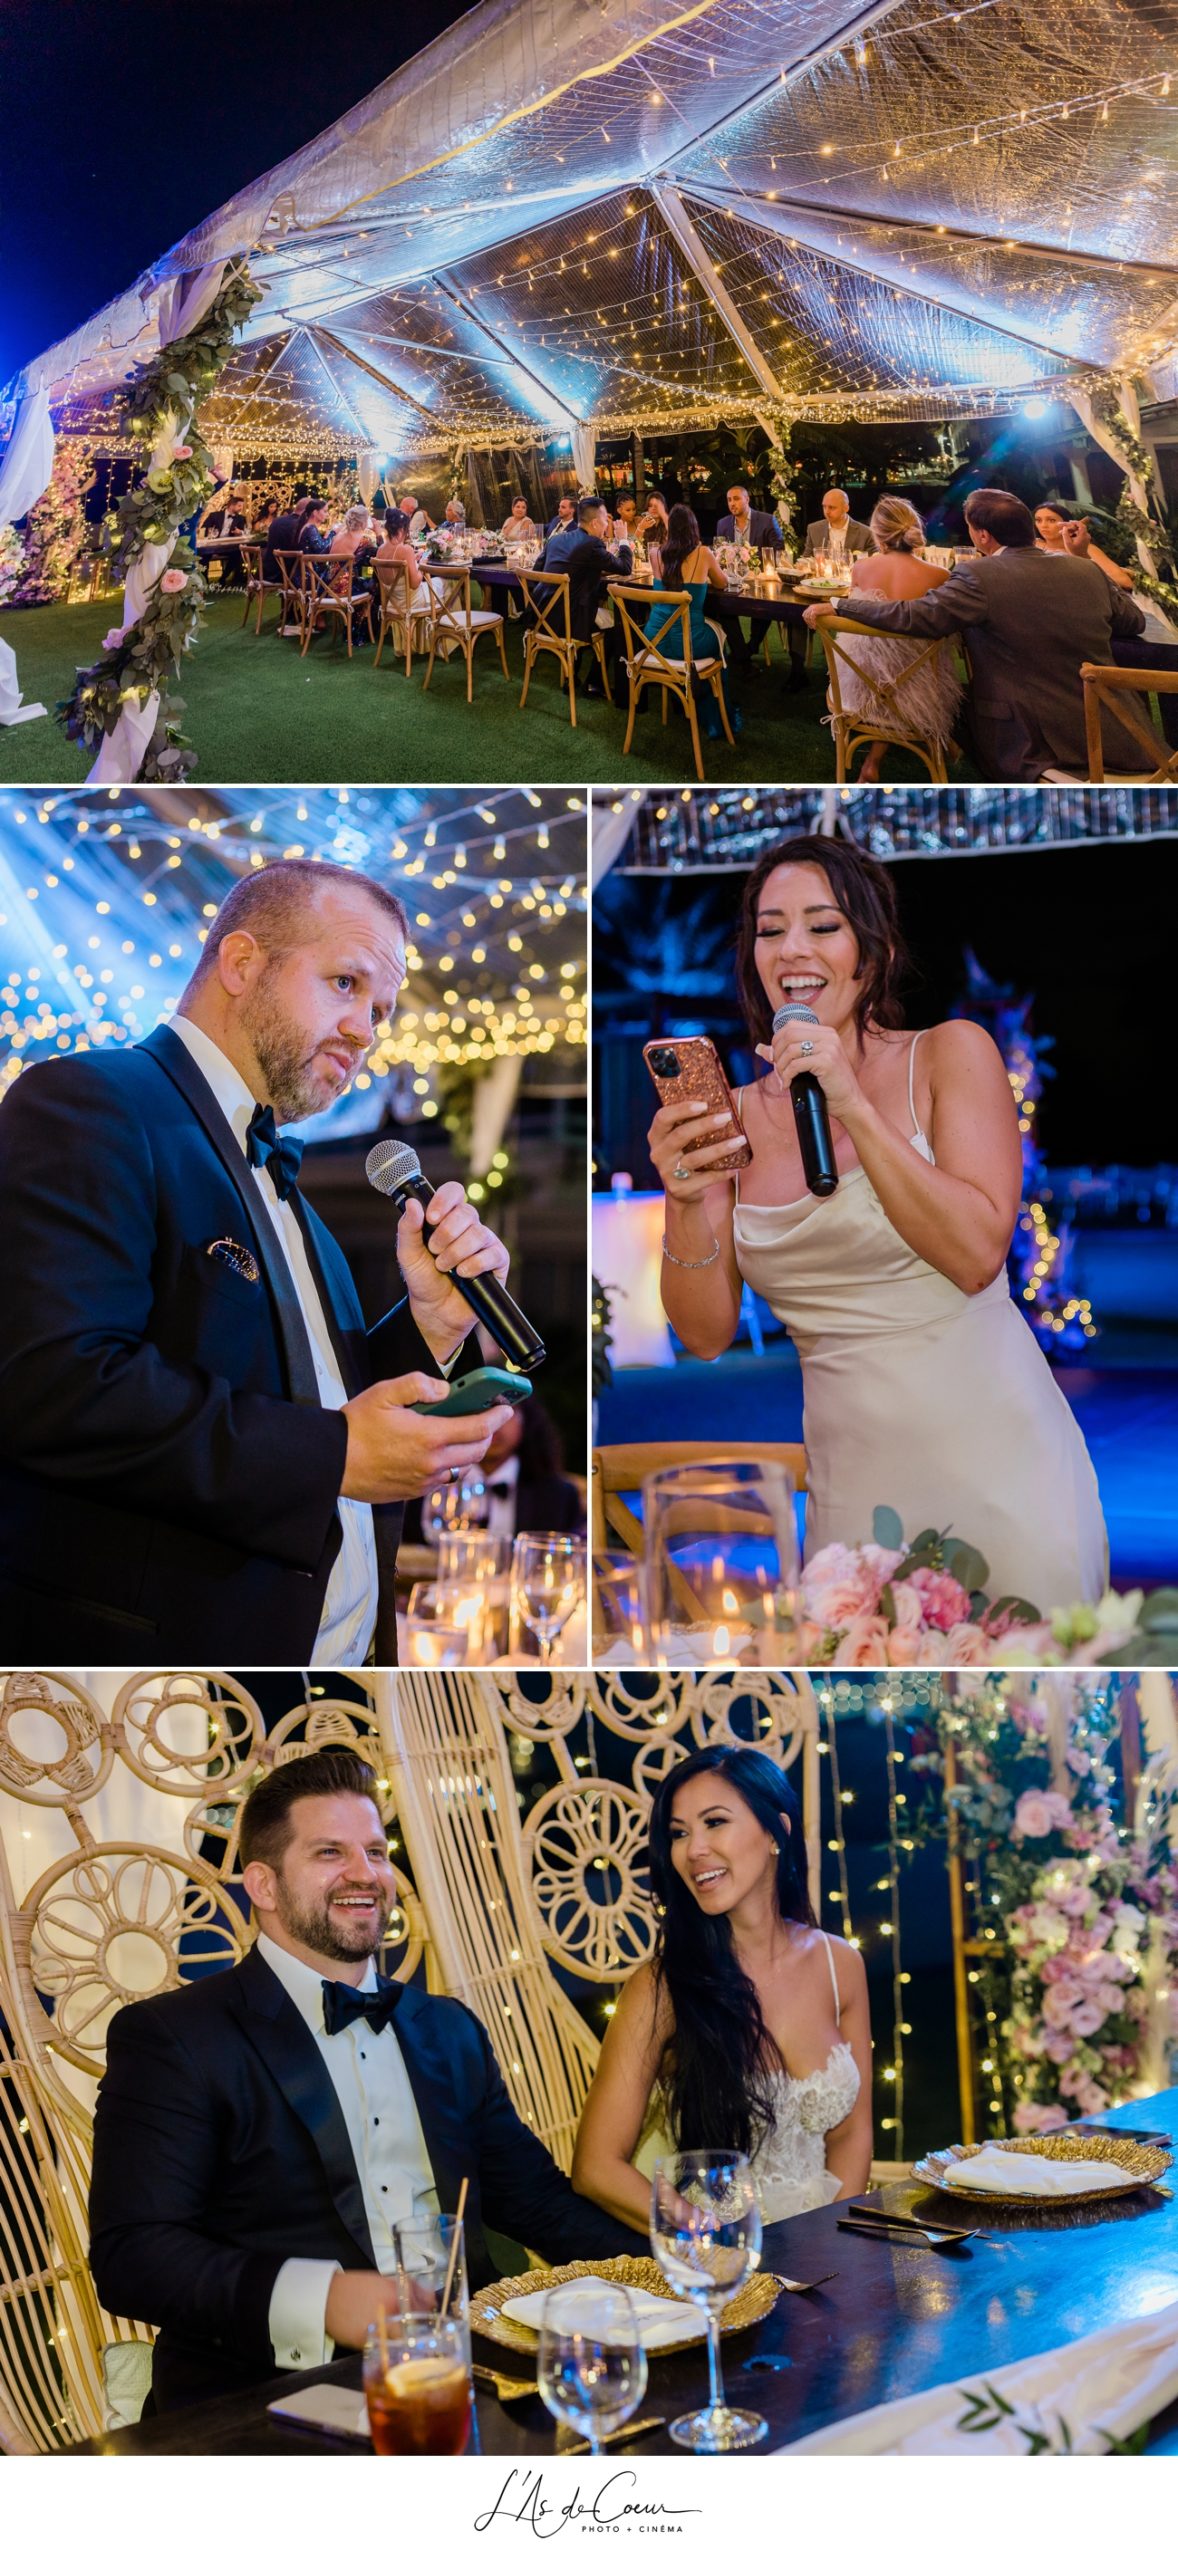 Wedding photographer Sint Maarten speeches